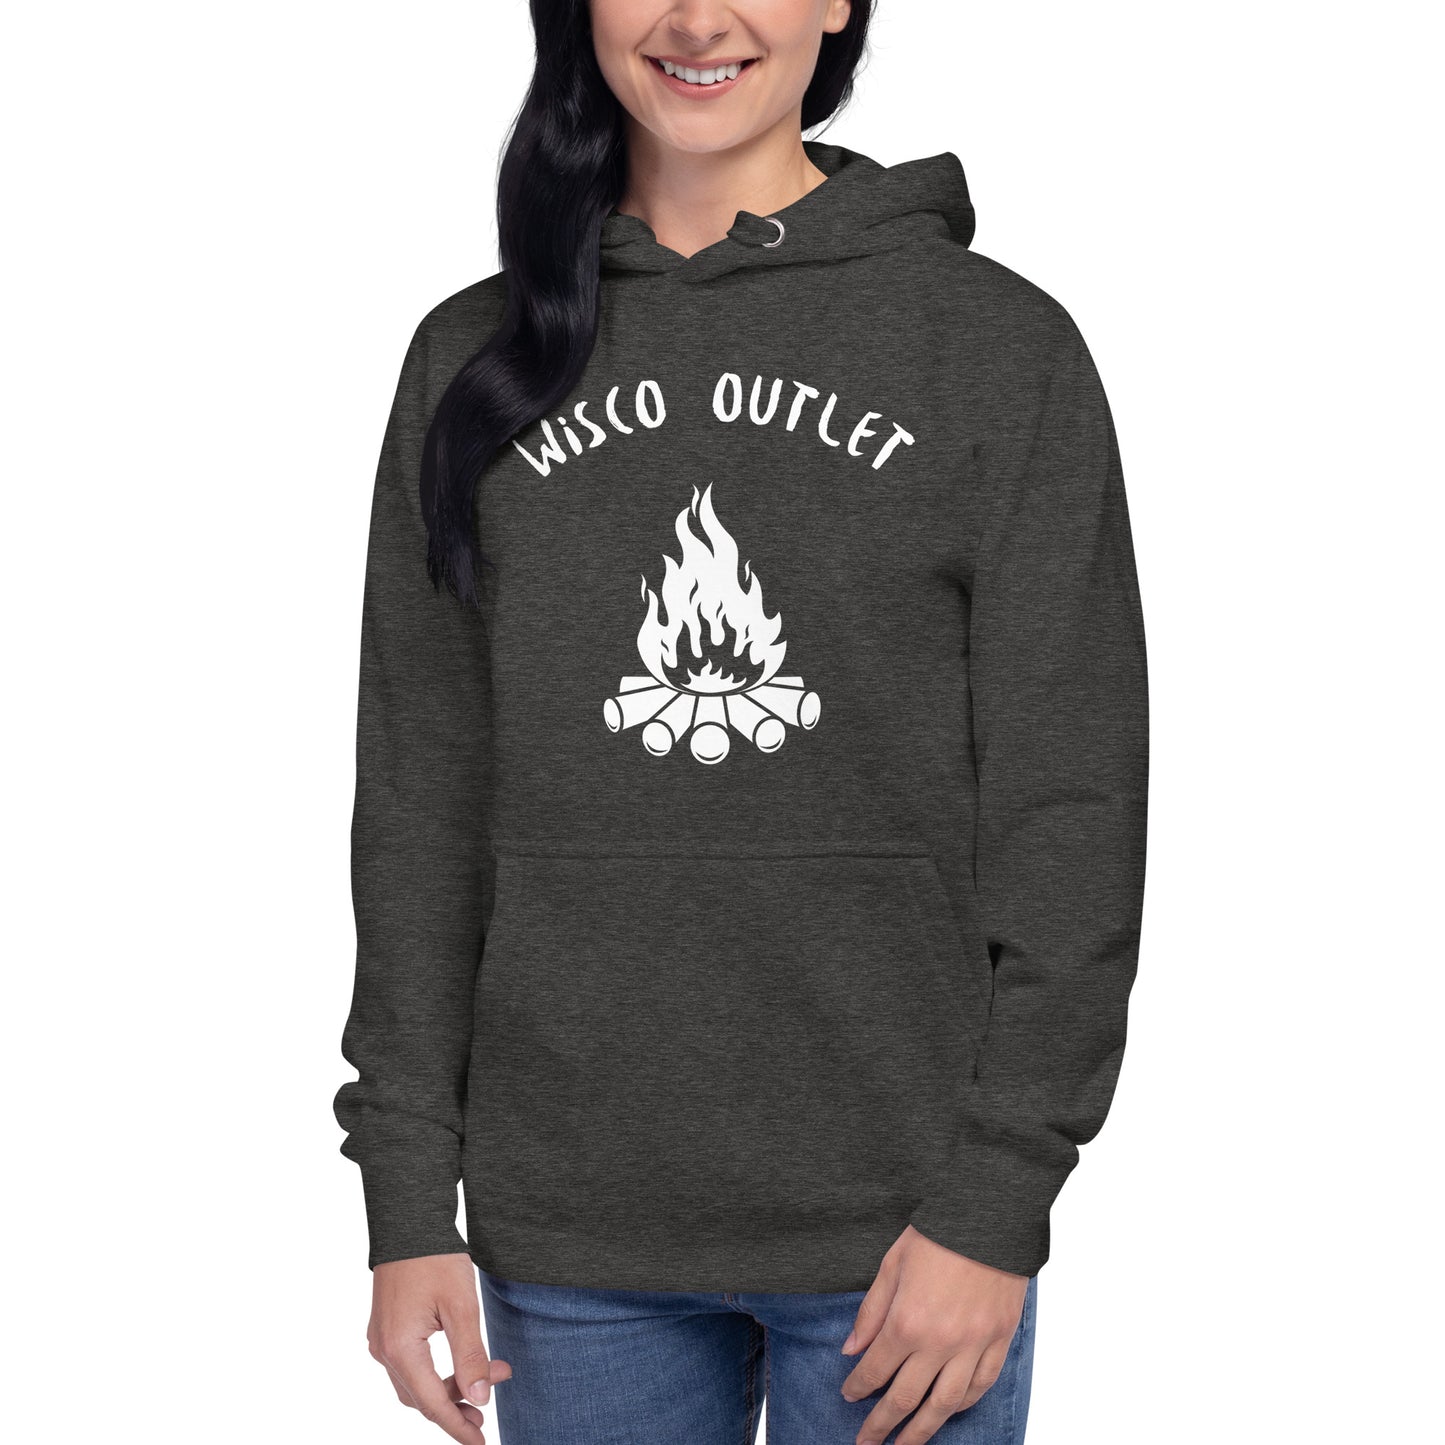 Wisco Outlet Fire Sweatshirt